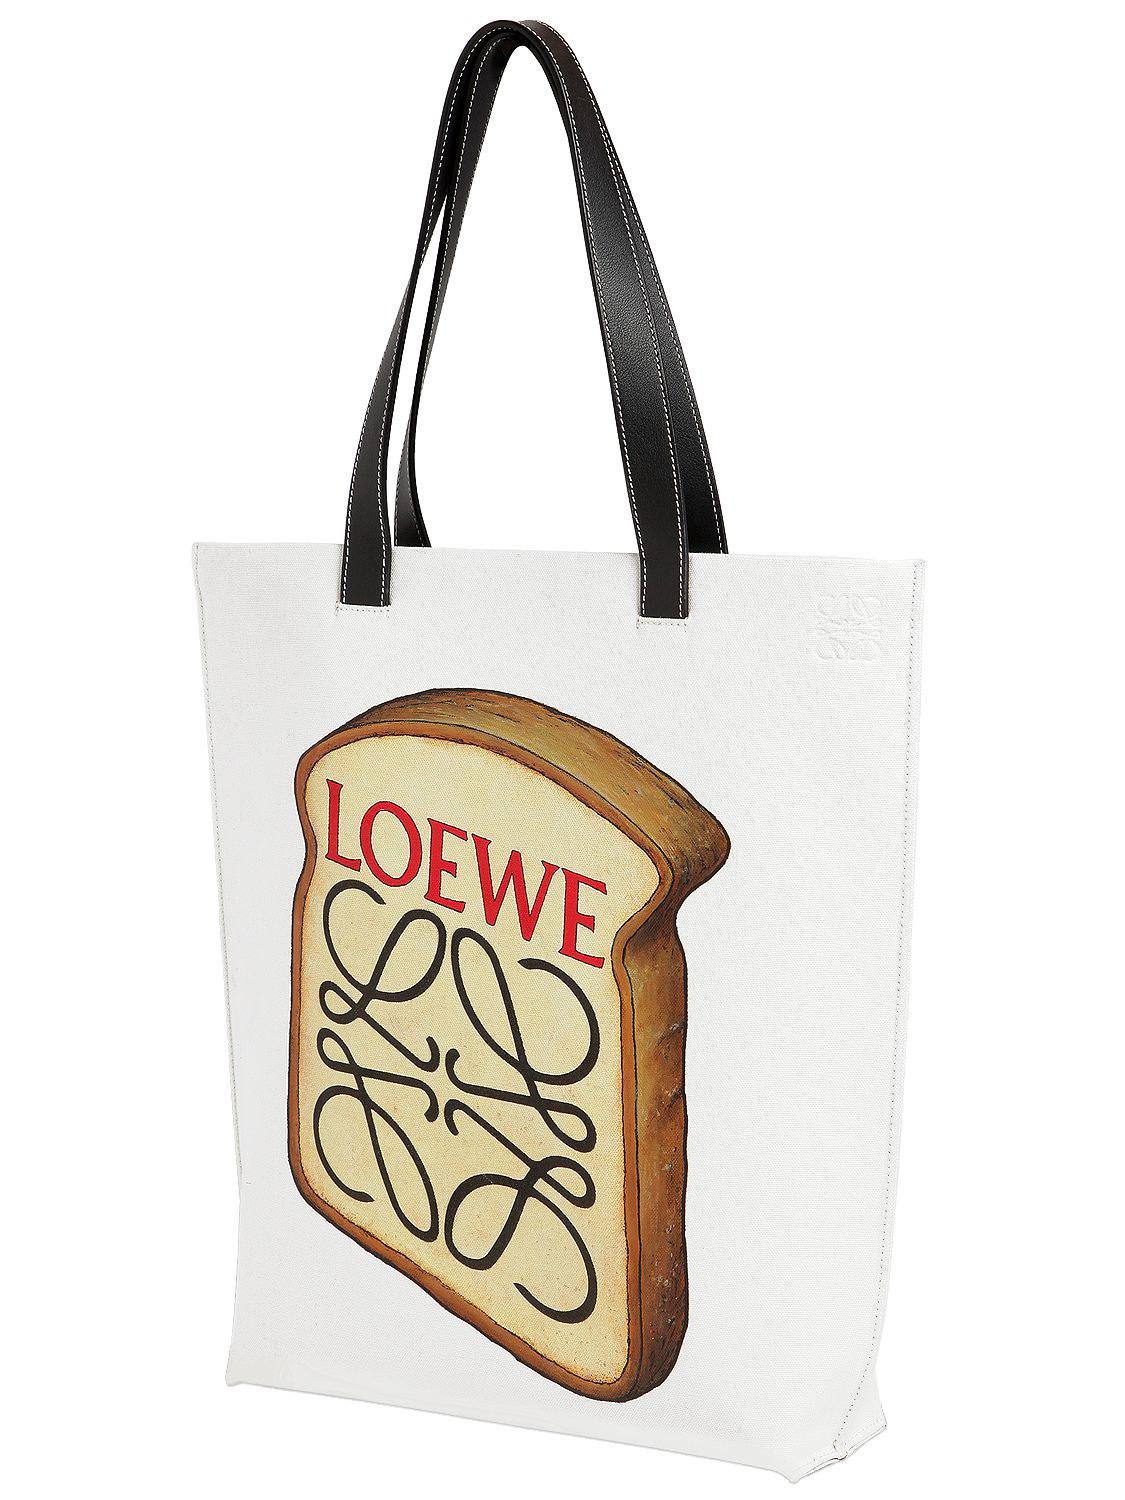 loewe toast bag